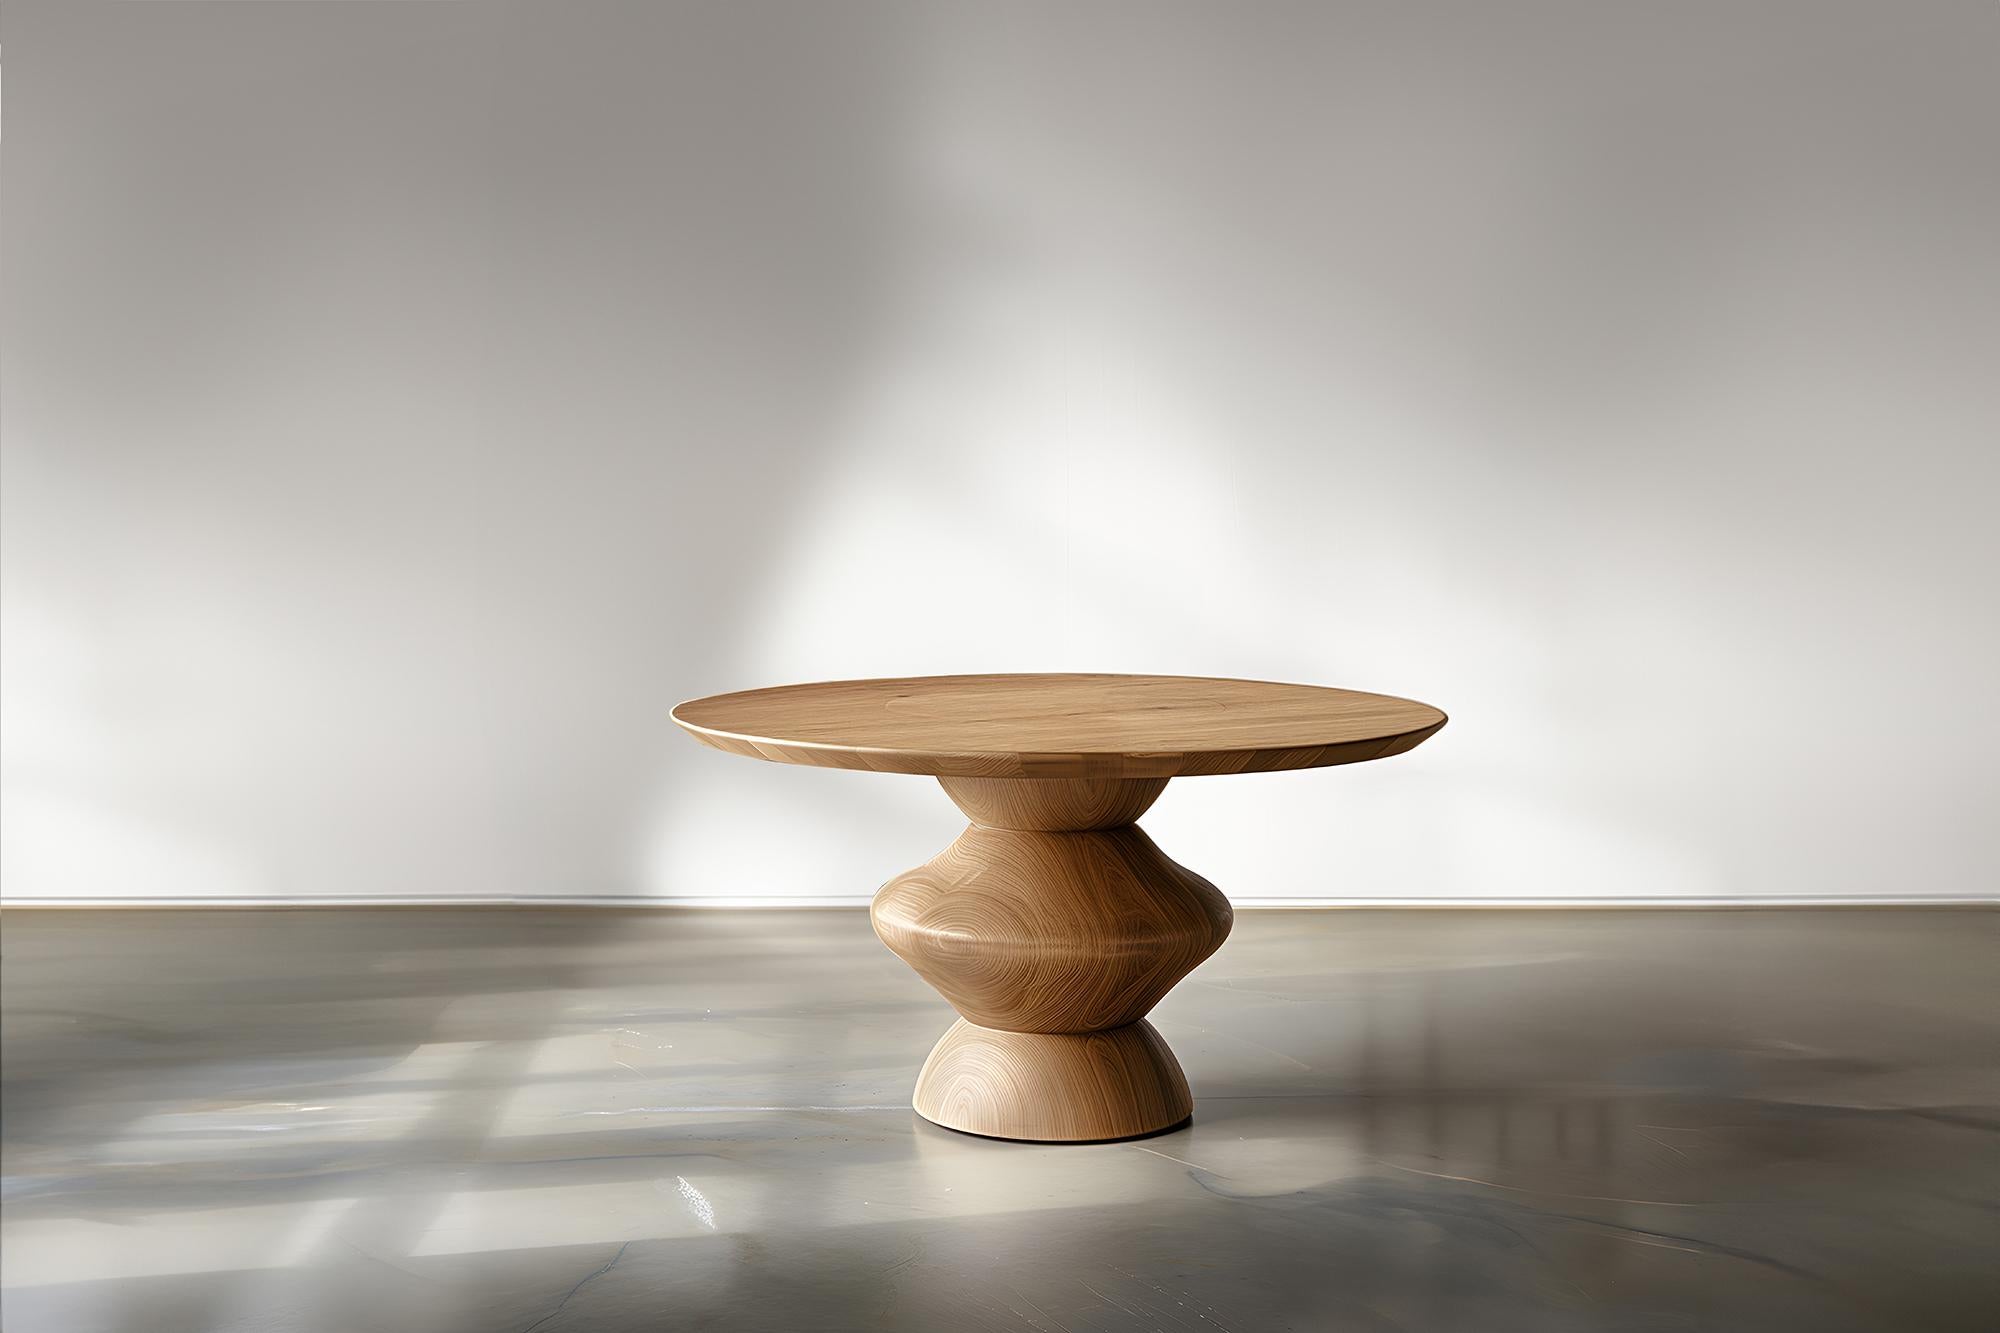 Série Socle No15, Tables consoles par NONO, Wood Elegance
--

Voici la 